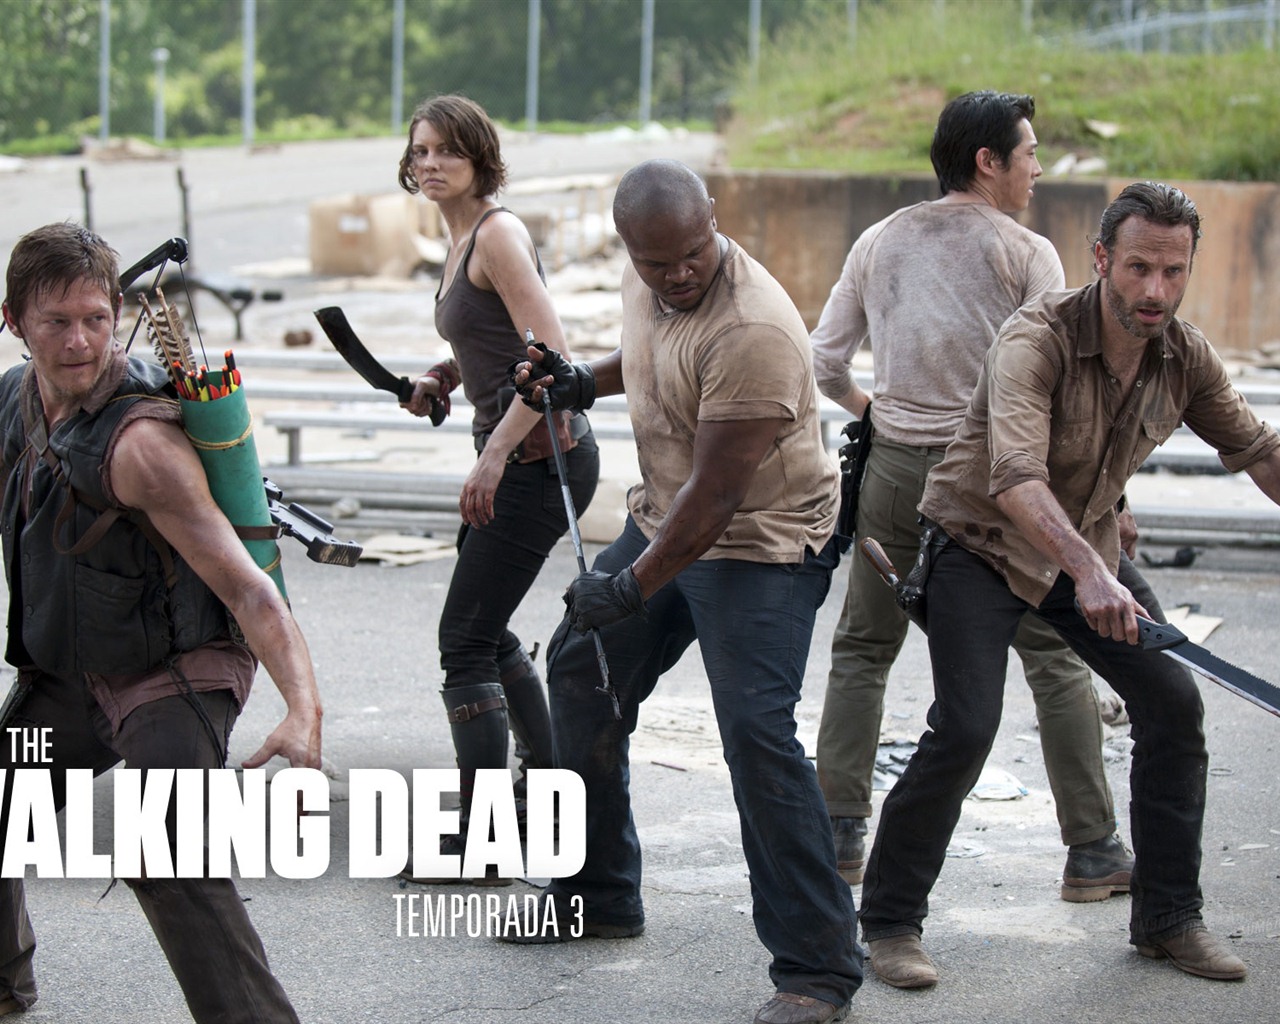 The Walking Dead HD wallpapers #16 - 1280x1024